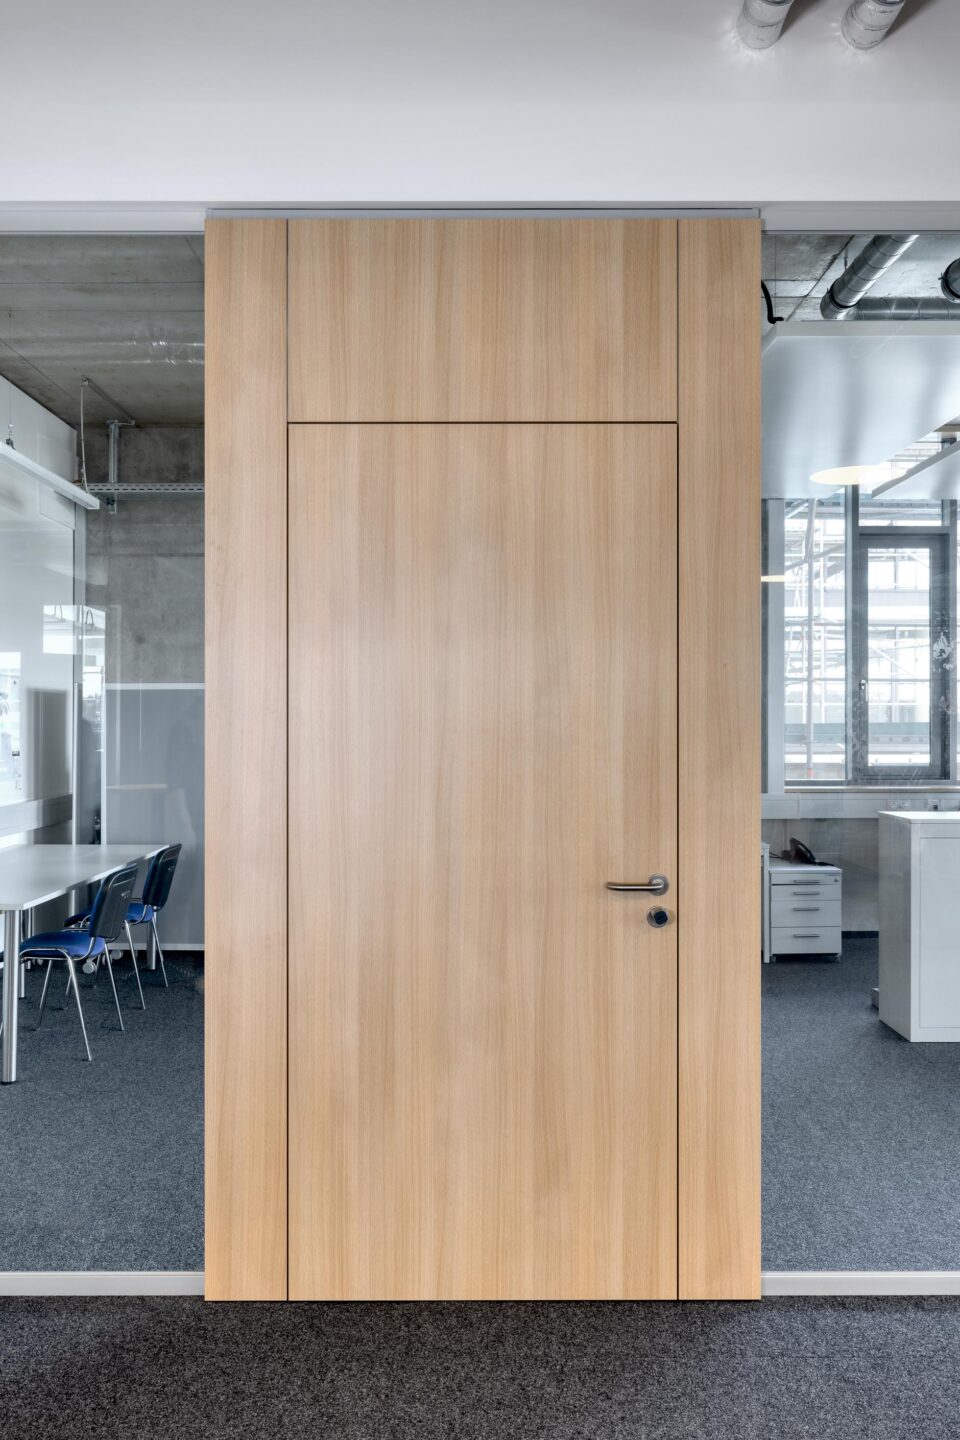 Erhardt + Leimer electrical installations | wooden door